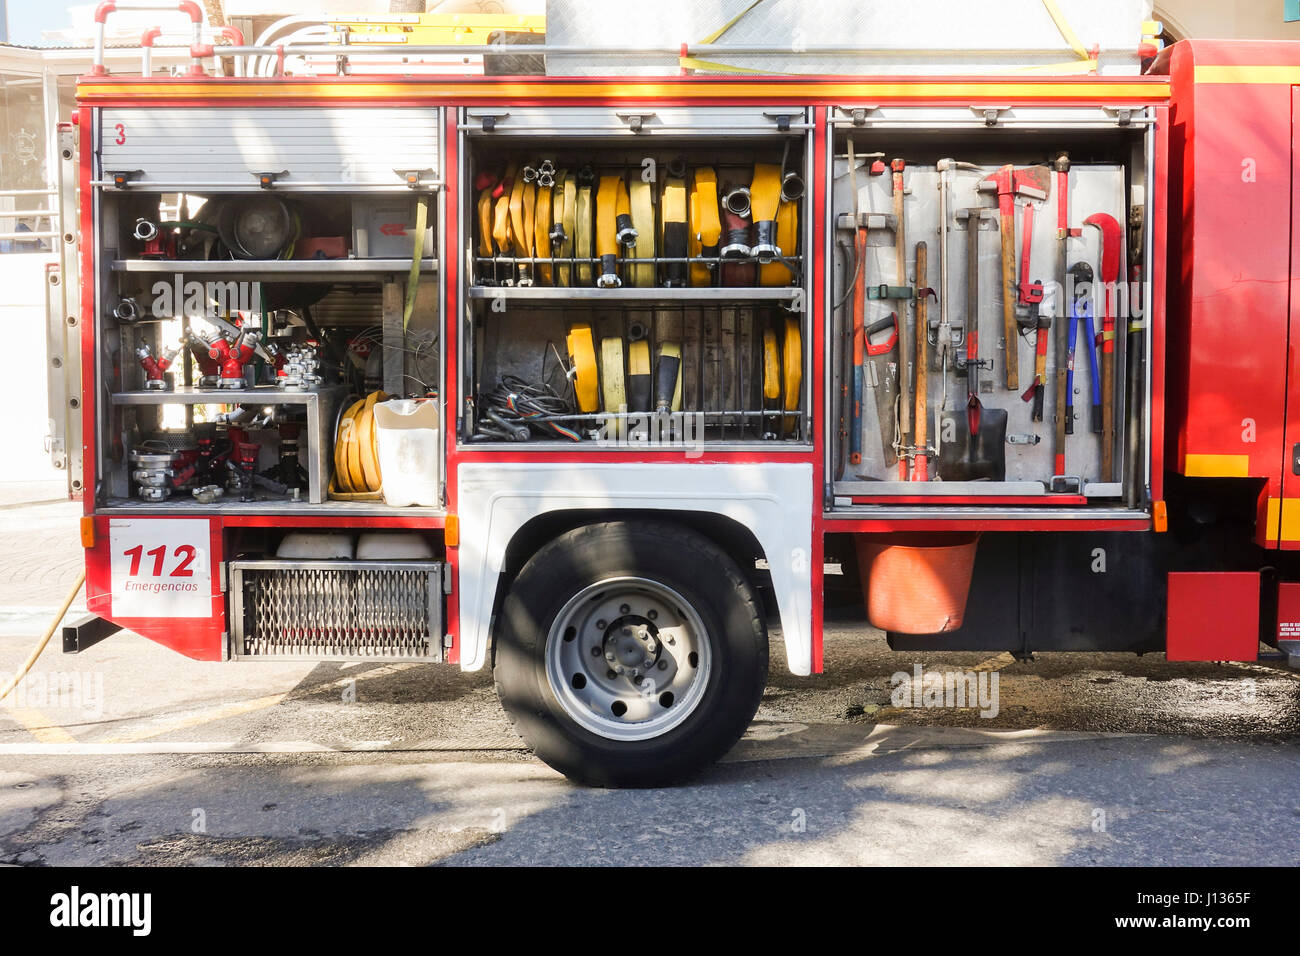 L'équipement de pompier, outils à main en fire truck equipment, pompiers,  Espagne Photo Stock - Alamy